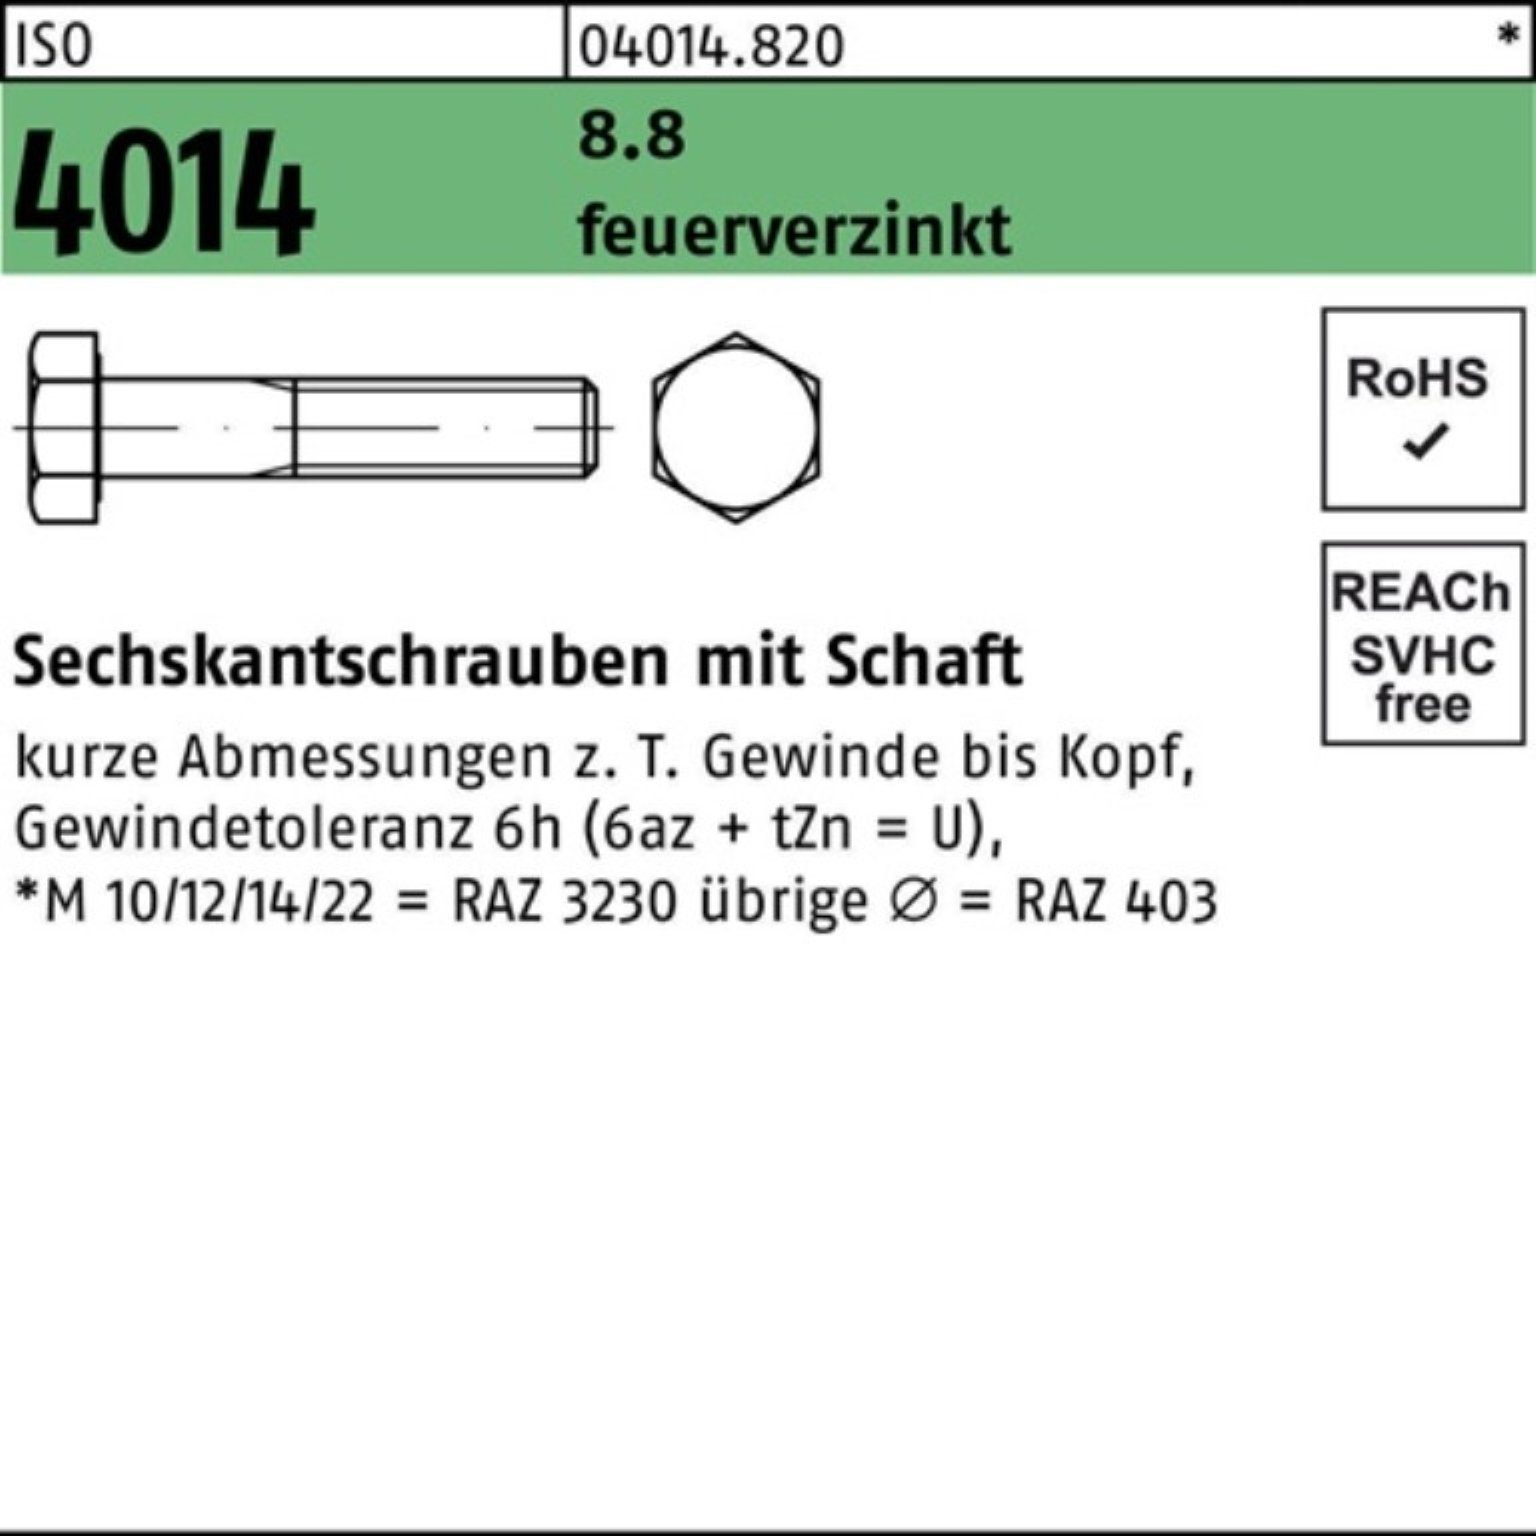 Bufab Sechskantschraube 100er Pack Sechskantschraube ISO 4014 Schaft M10x 80 8.8 feuerverz. 10